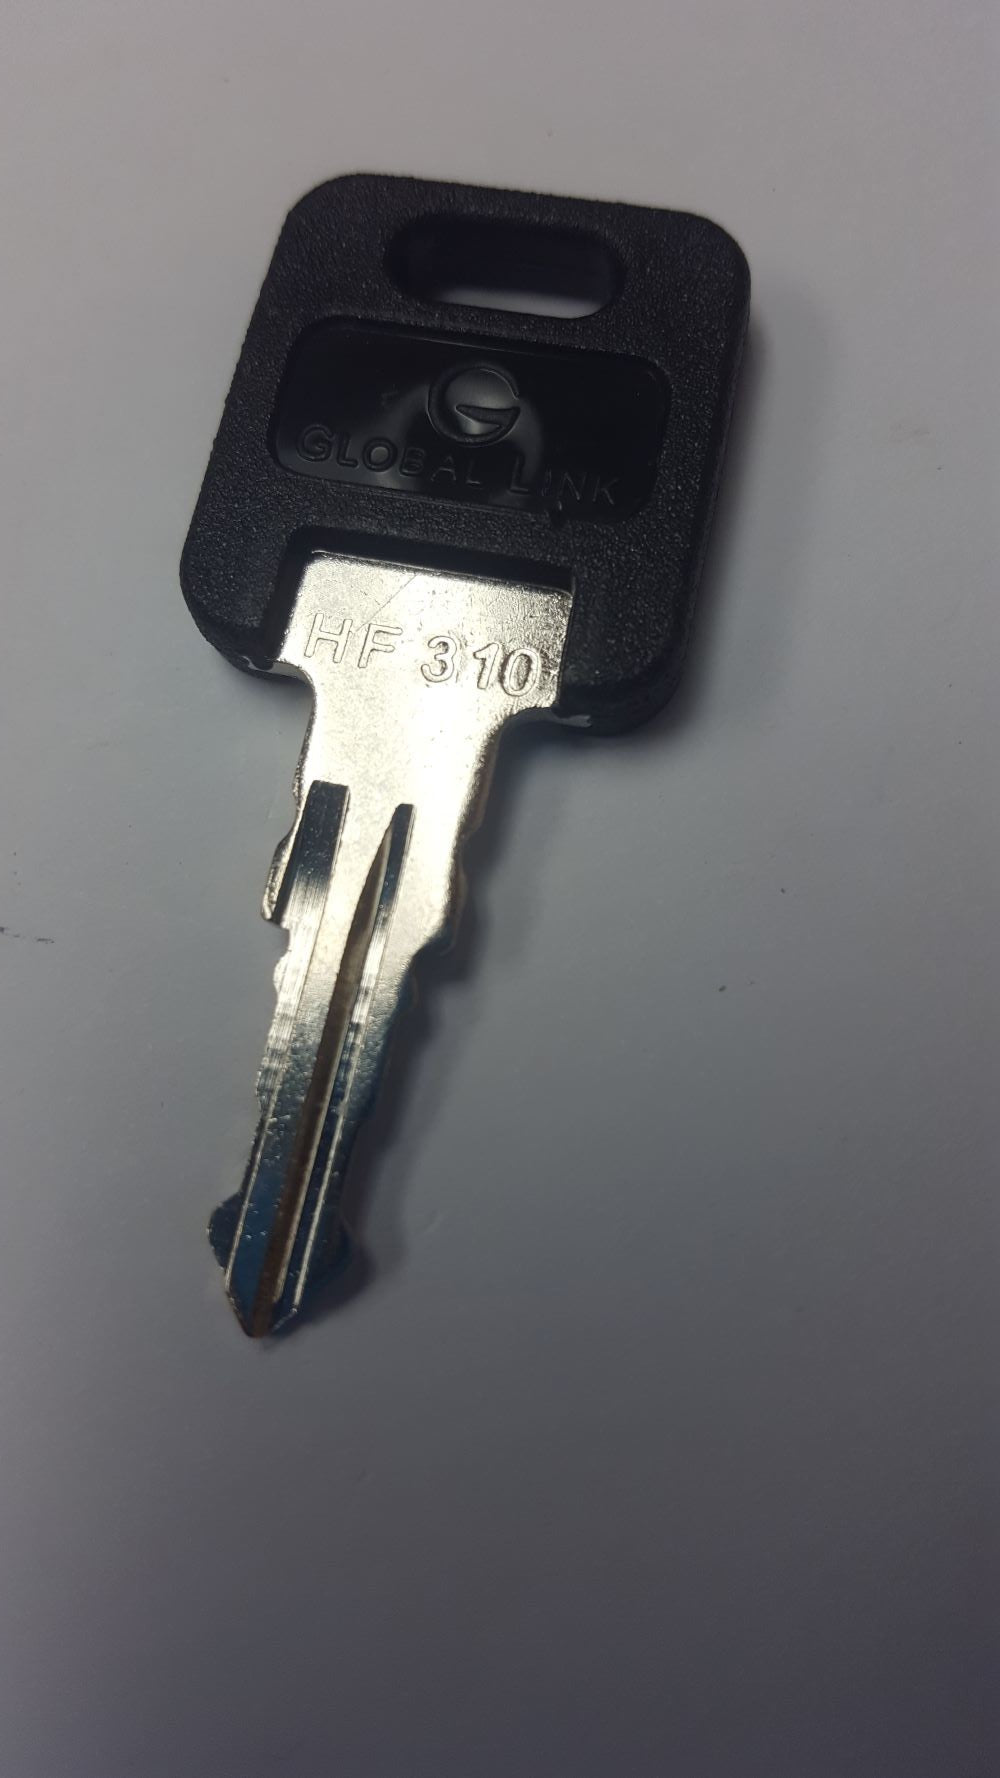 CPG KEY-HF-310 Pre-cut Stamped FIC Replacemnt HF310 Key